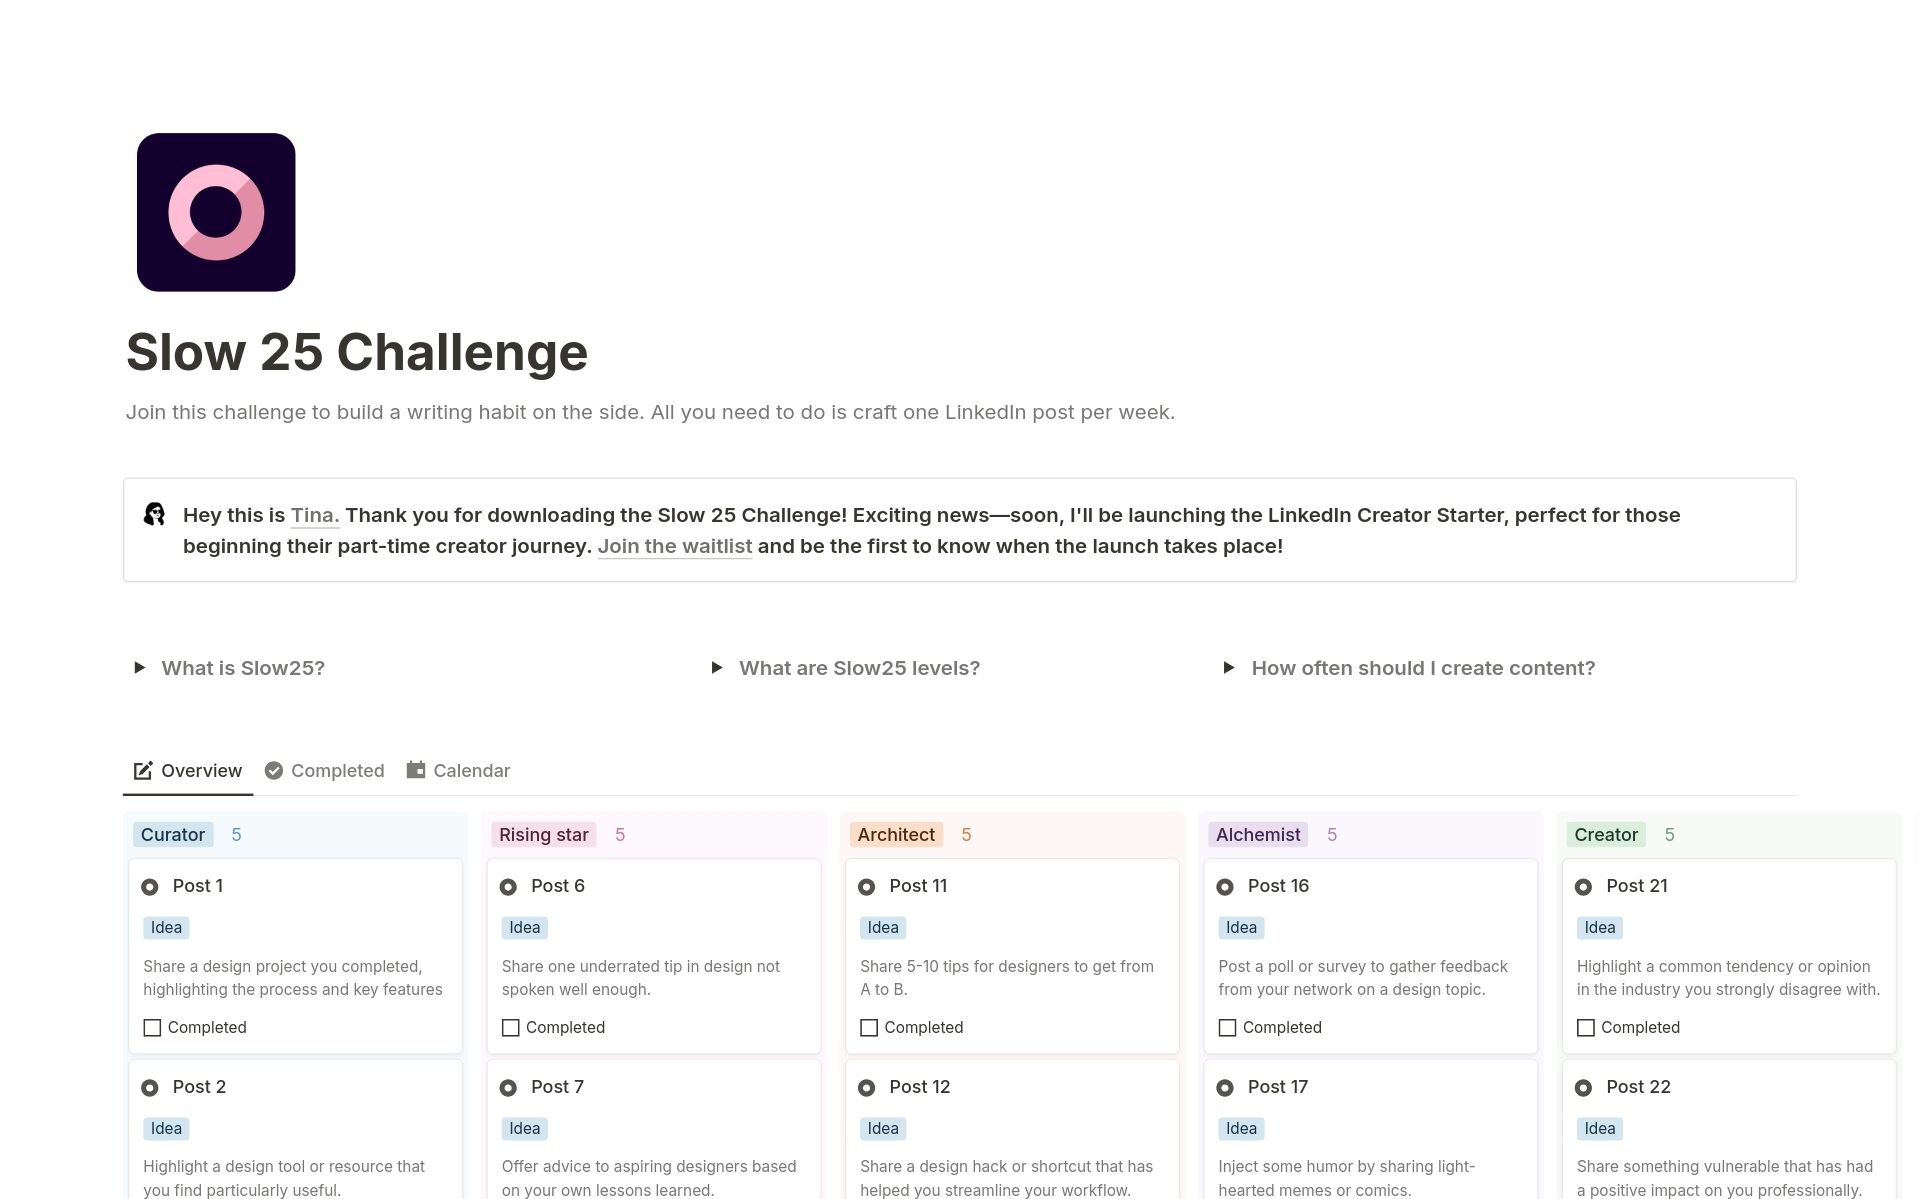 En förhandsgranskning av mallen för LinkedIn Slow 25 Challenge